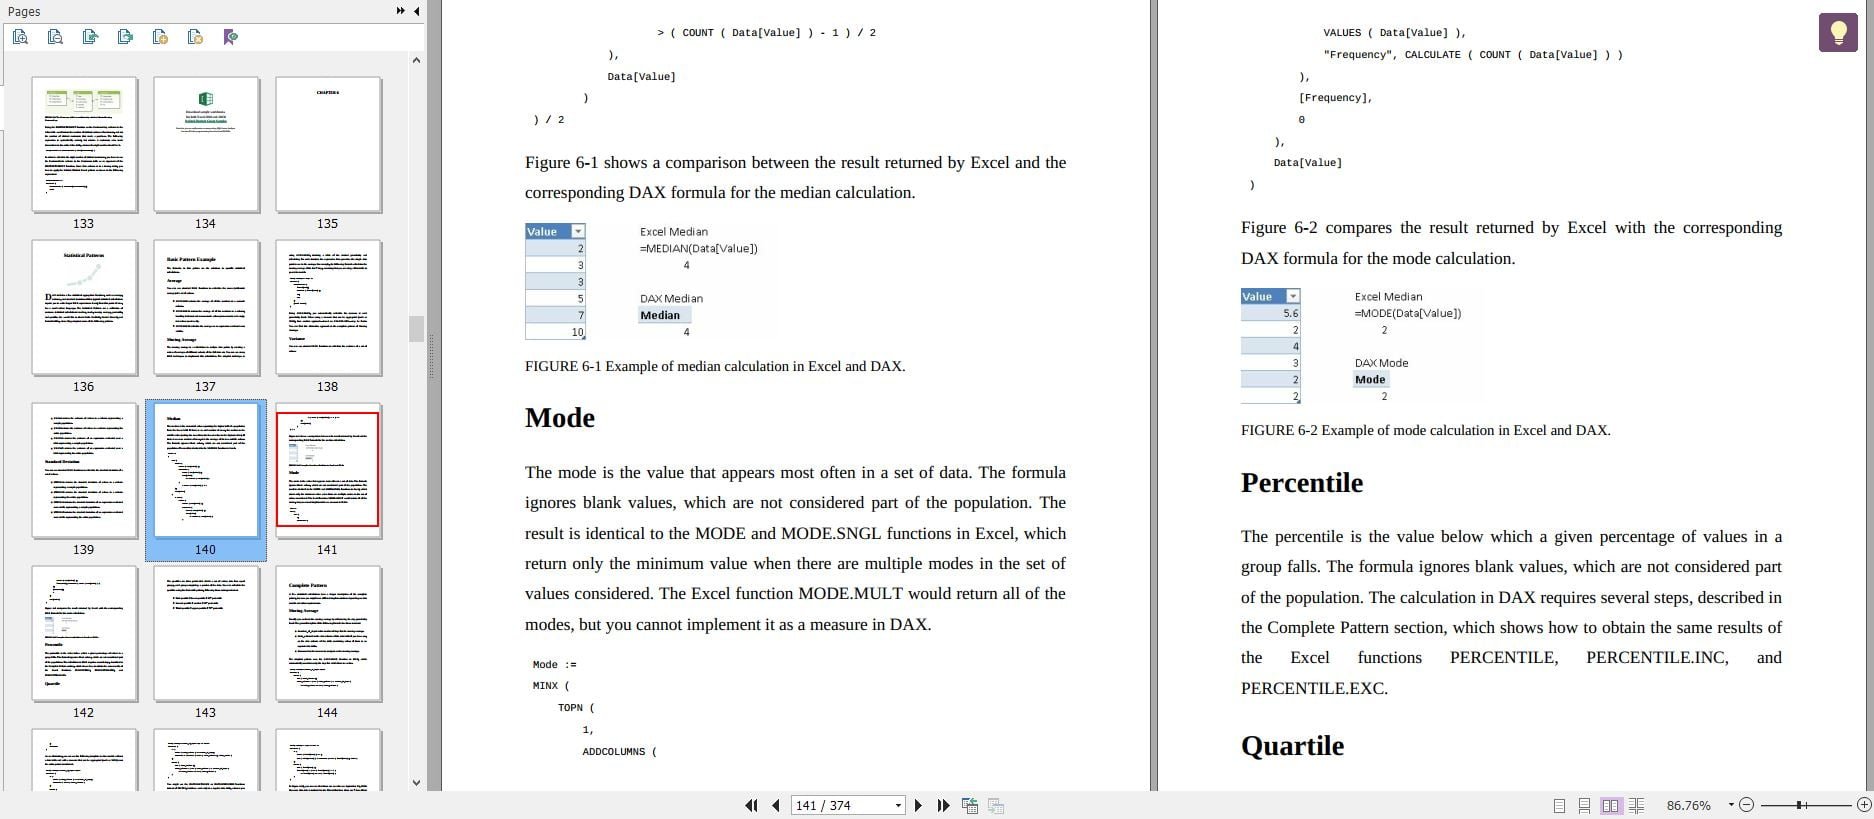 دانلود کتاب DAX patterns 2015 دانلود kindle کتاب از امازون خرید آمازون Download Free Kindle Download Kindle Book From Amazon دانلودPDF کتاب DAX patterns دانلود کیندل گیگاپیپر